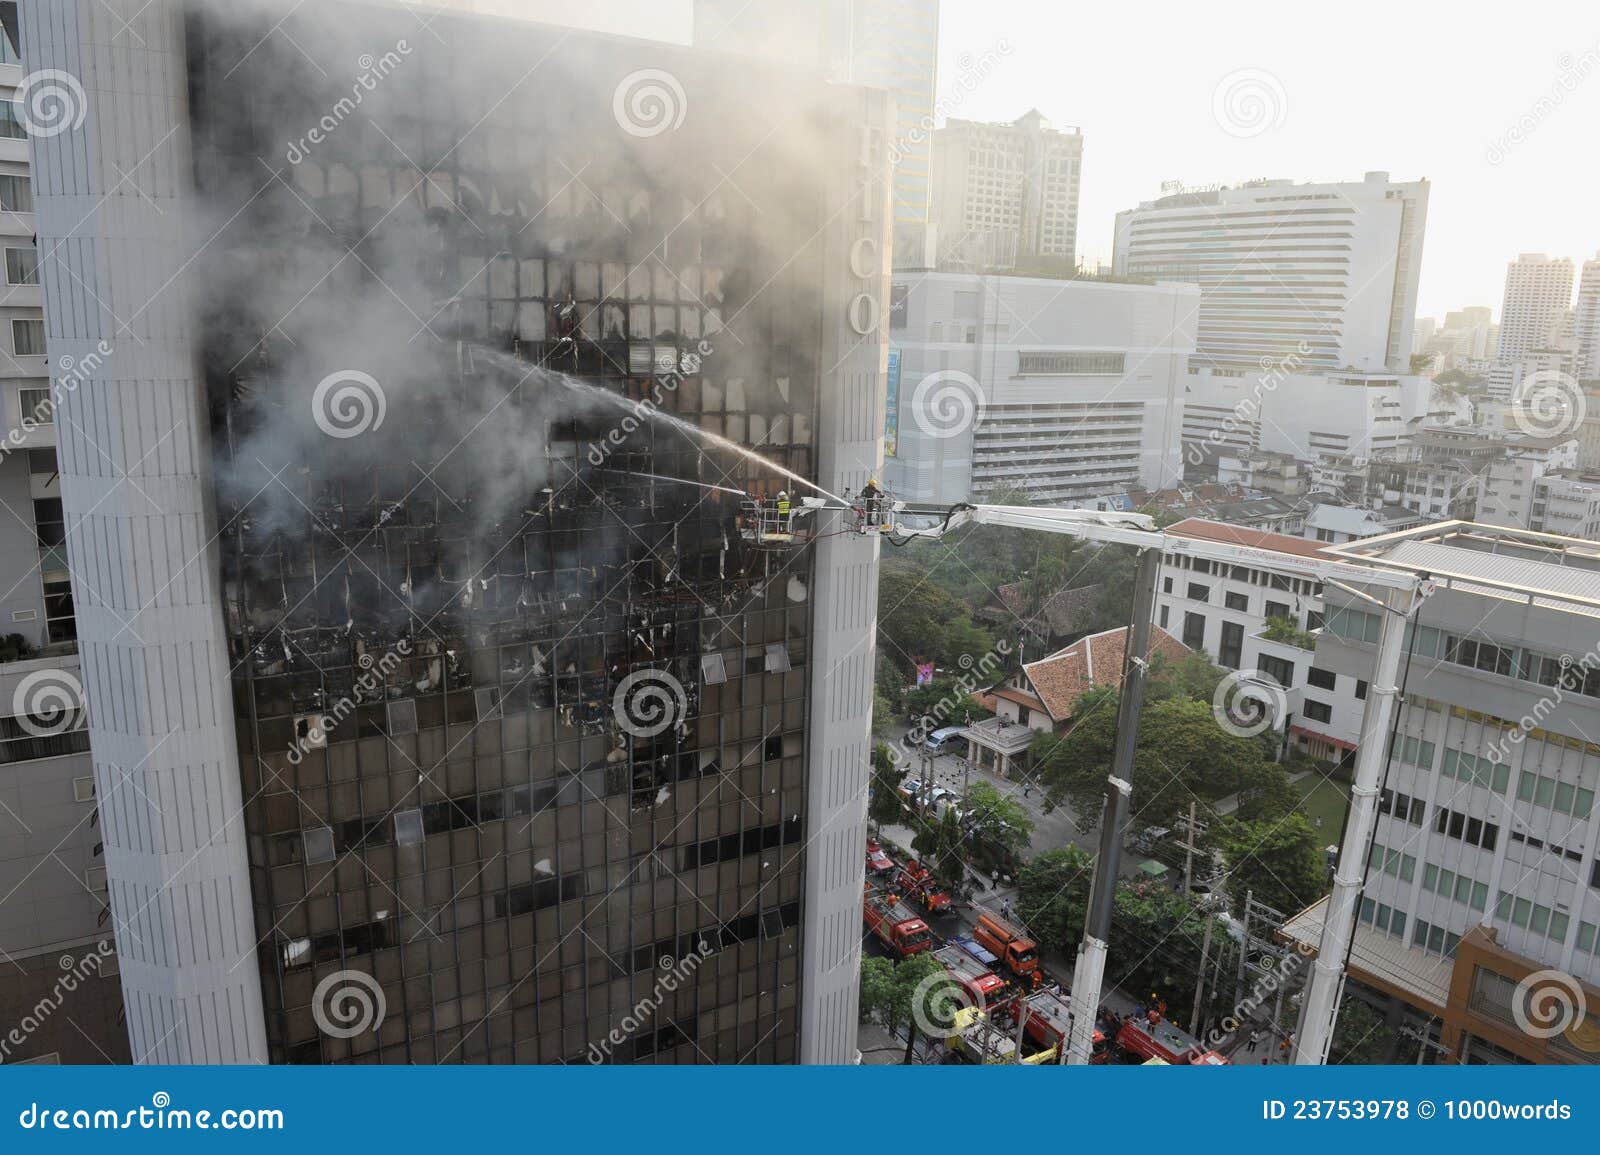 Blasku blokowych strażaków biurowy sprzęt. 5 2012 administraci asoke Bangkok blasku bma budynku przyczyna centre miasta fico strażaków dochodzenie wszczynającego marszu wielkomiejskiego drogowego sprzęt Thailand